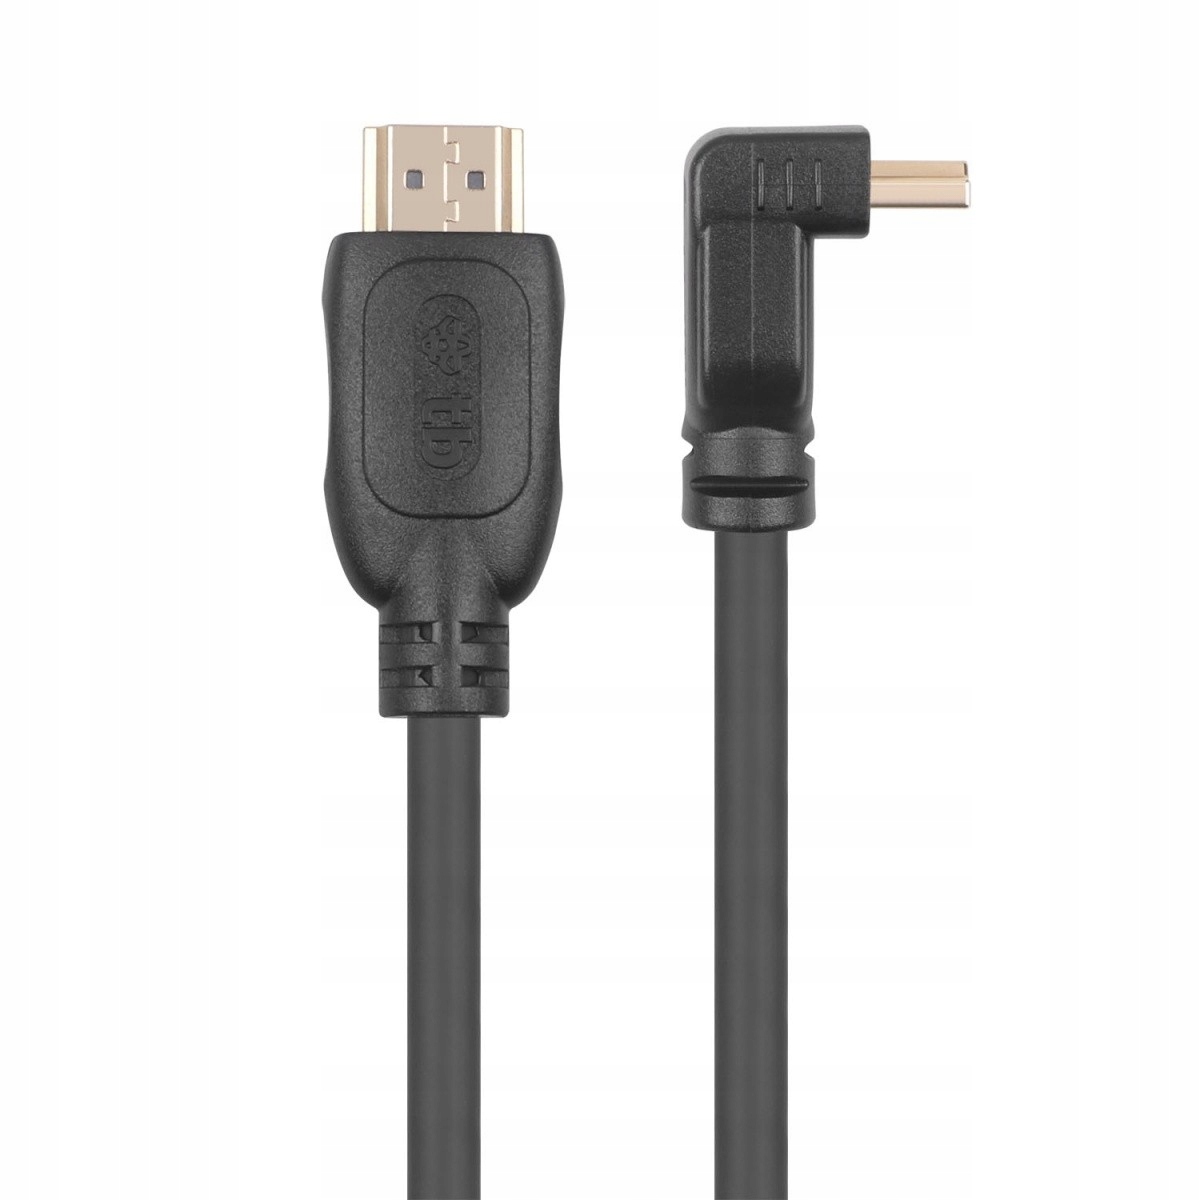 TB кабель HDMI v 2.0 позолоченный 1.8 м угловой бренд TB